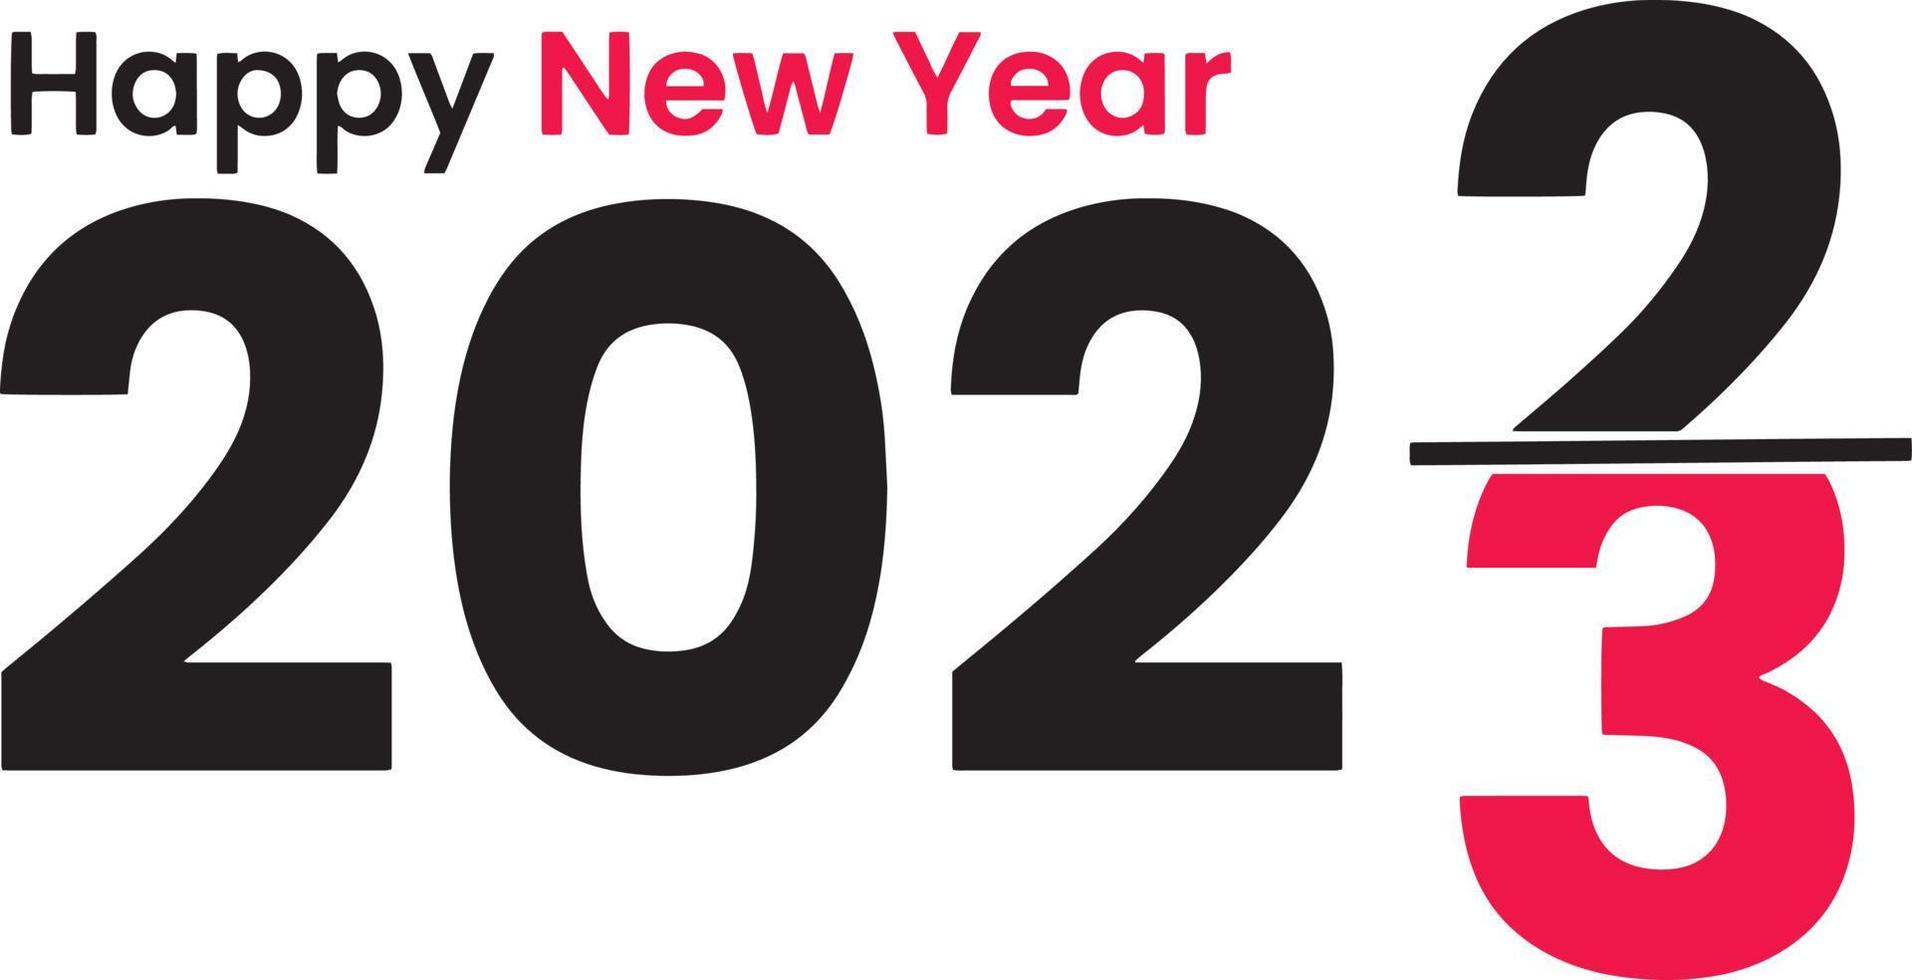 salutations de bonne année avec une illustration du tournant de l'année de 2022 à 2023 vecteur